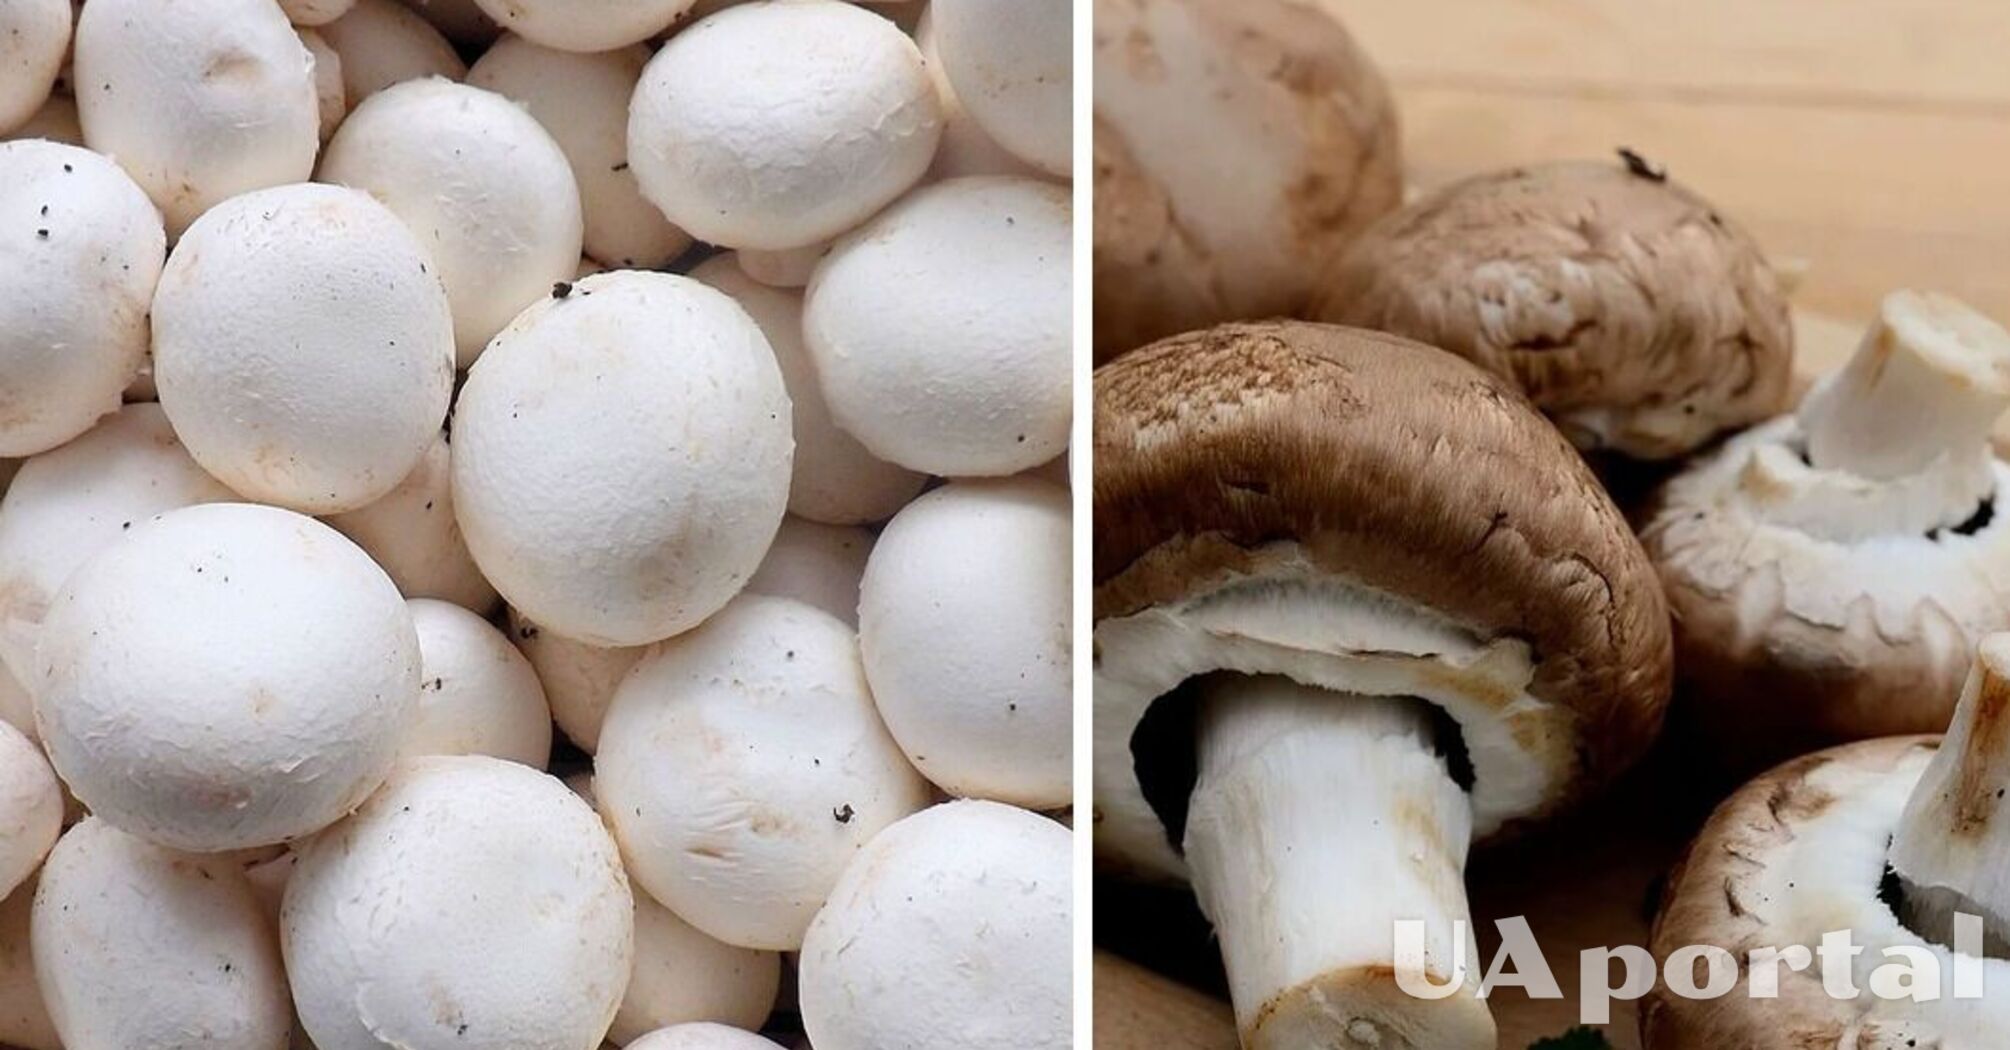 Експерти підказали, як зберігати гриби, щоб вони не вкривалися слизом та залишалися свіжими